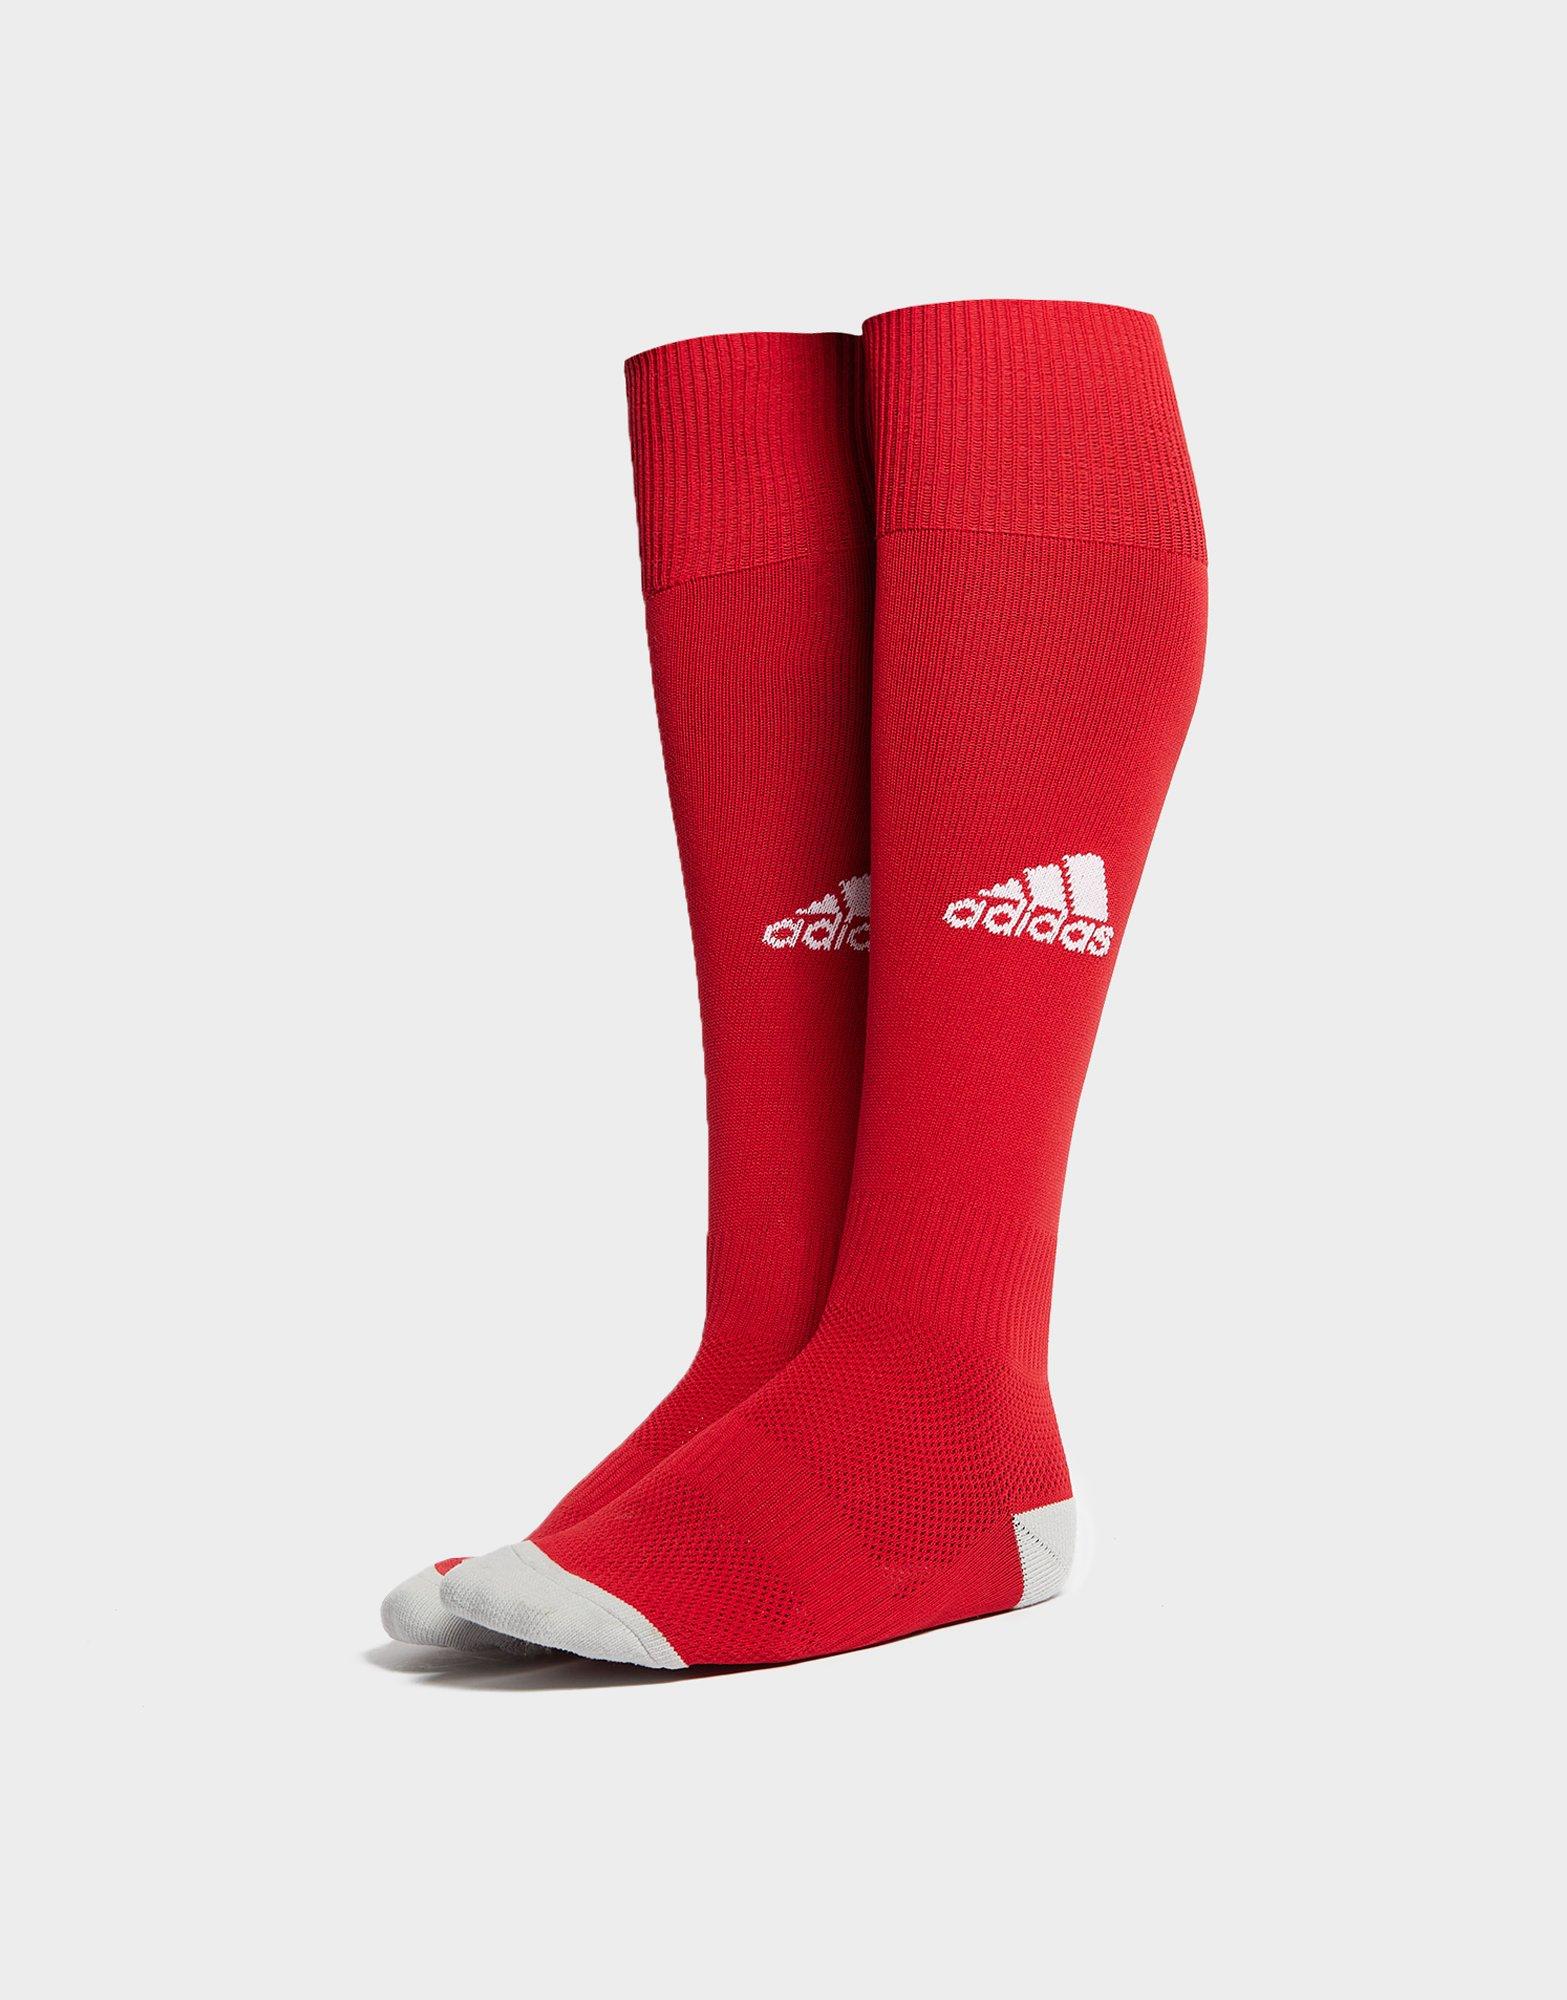 Bestrating Evalueerbaar virtueel Rood adidas Football Socks - JD Sports Nederland